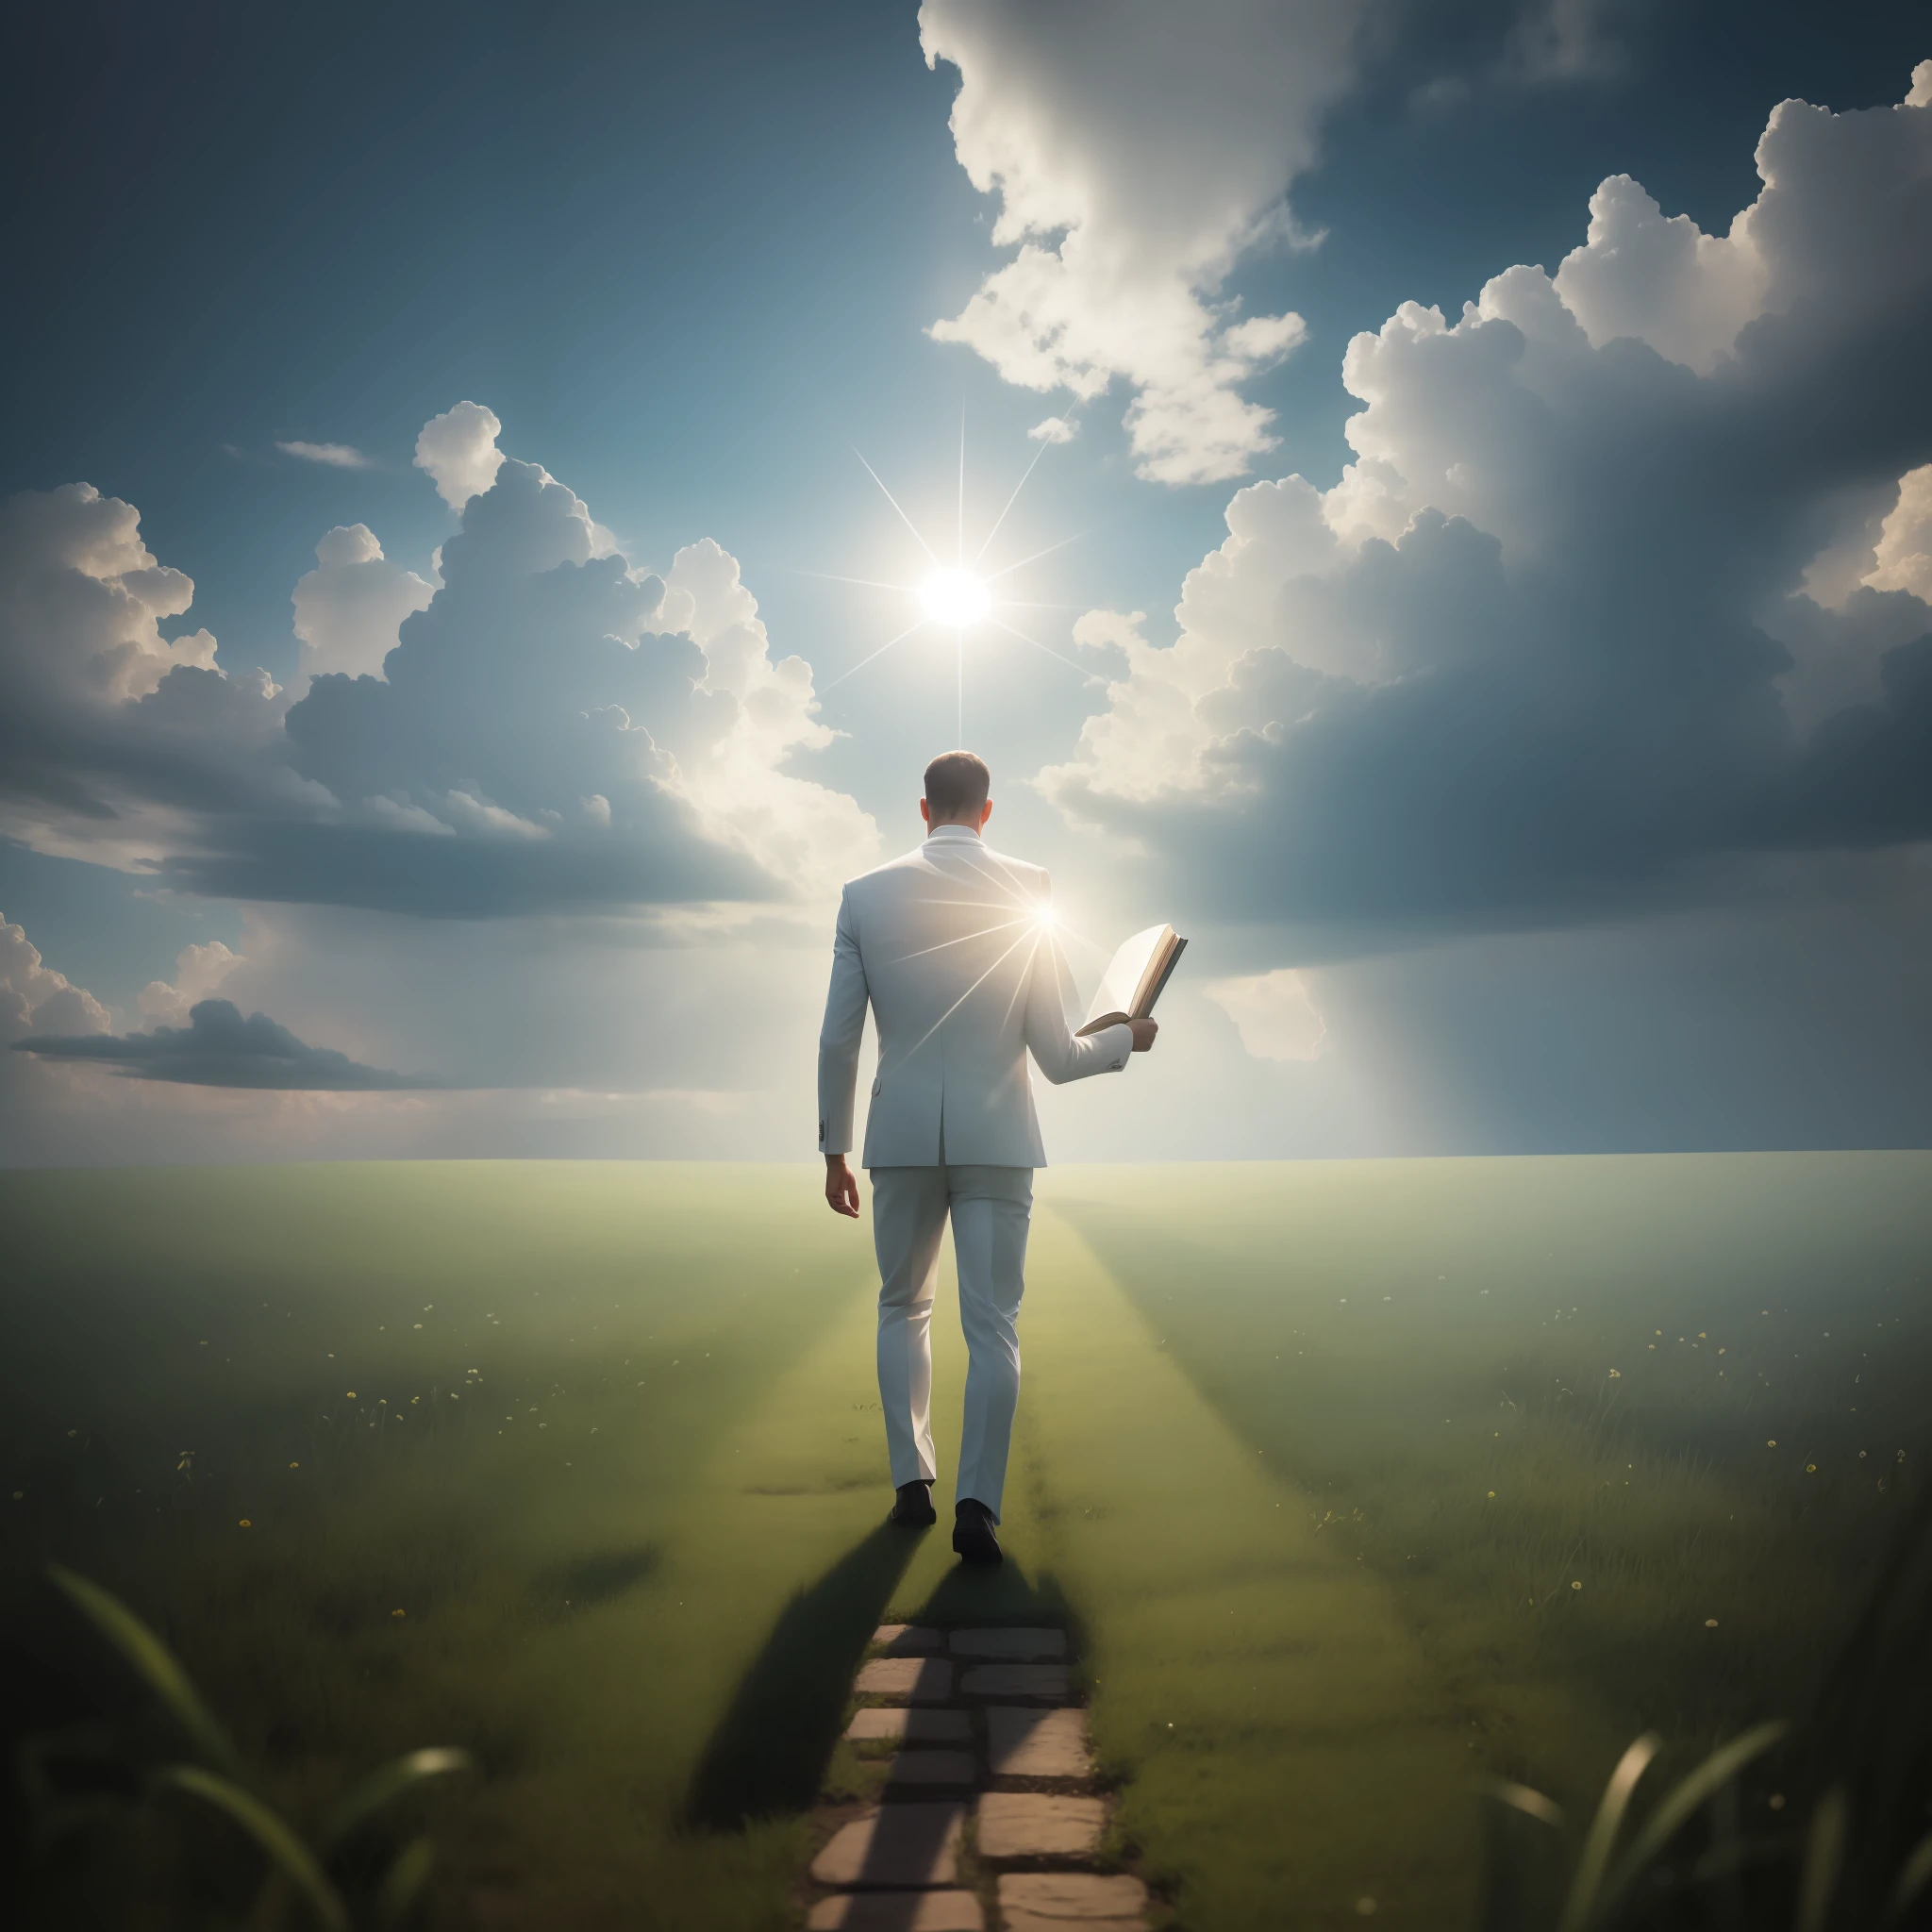 Un homme marchant vers le paradis, bible en main, seul, pelouse, ciel couvert, une forte lumière blanche venant du ciel, effet prisme, incroyablement détaillé, meilleure qualité, 8k